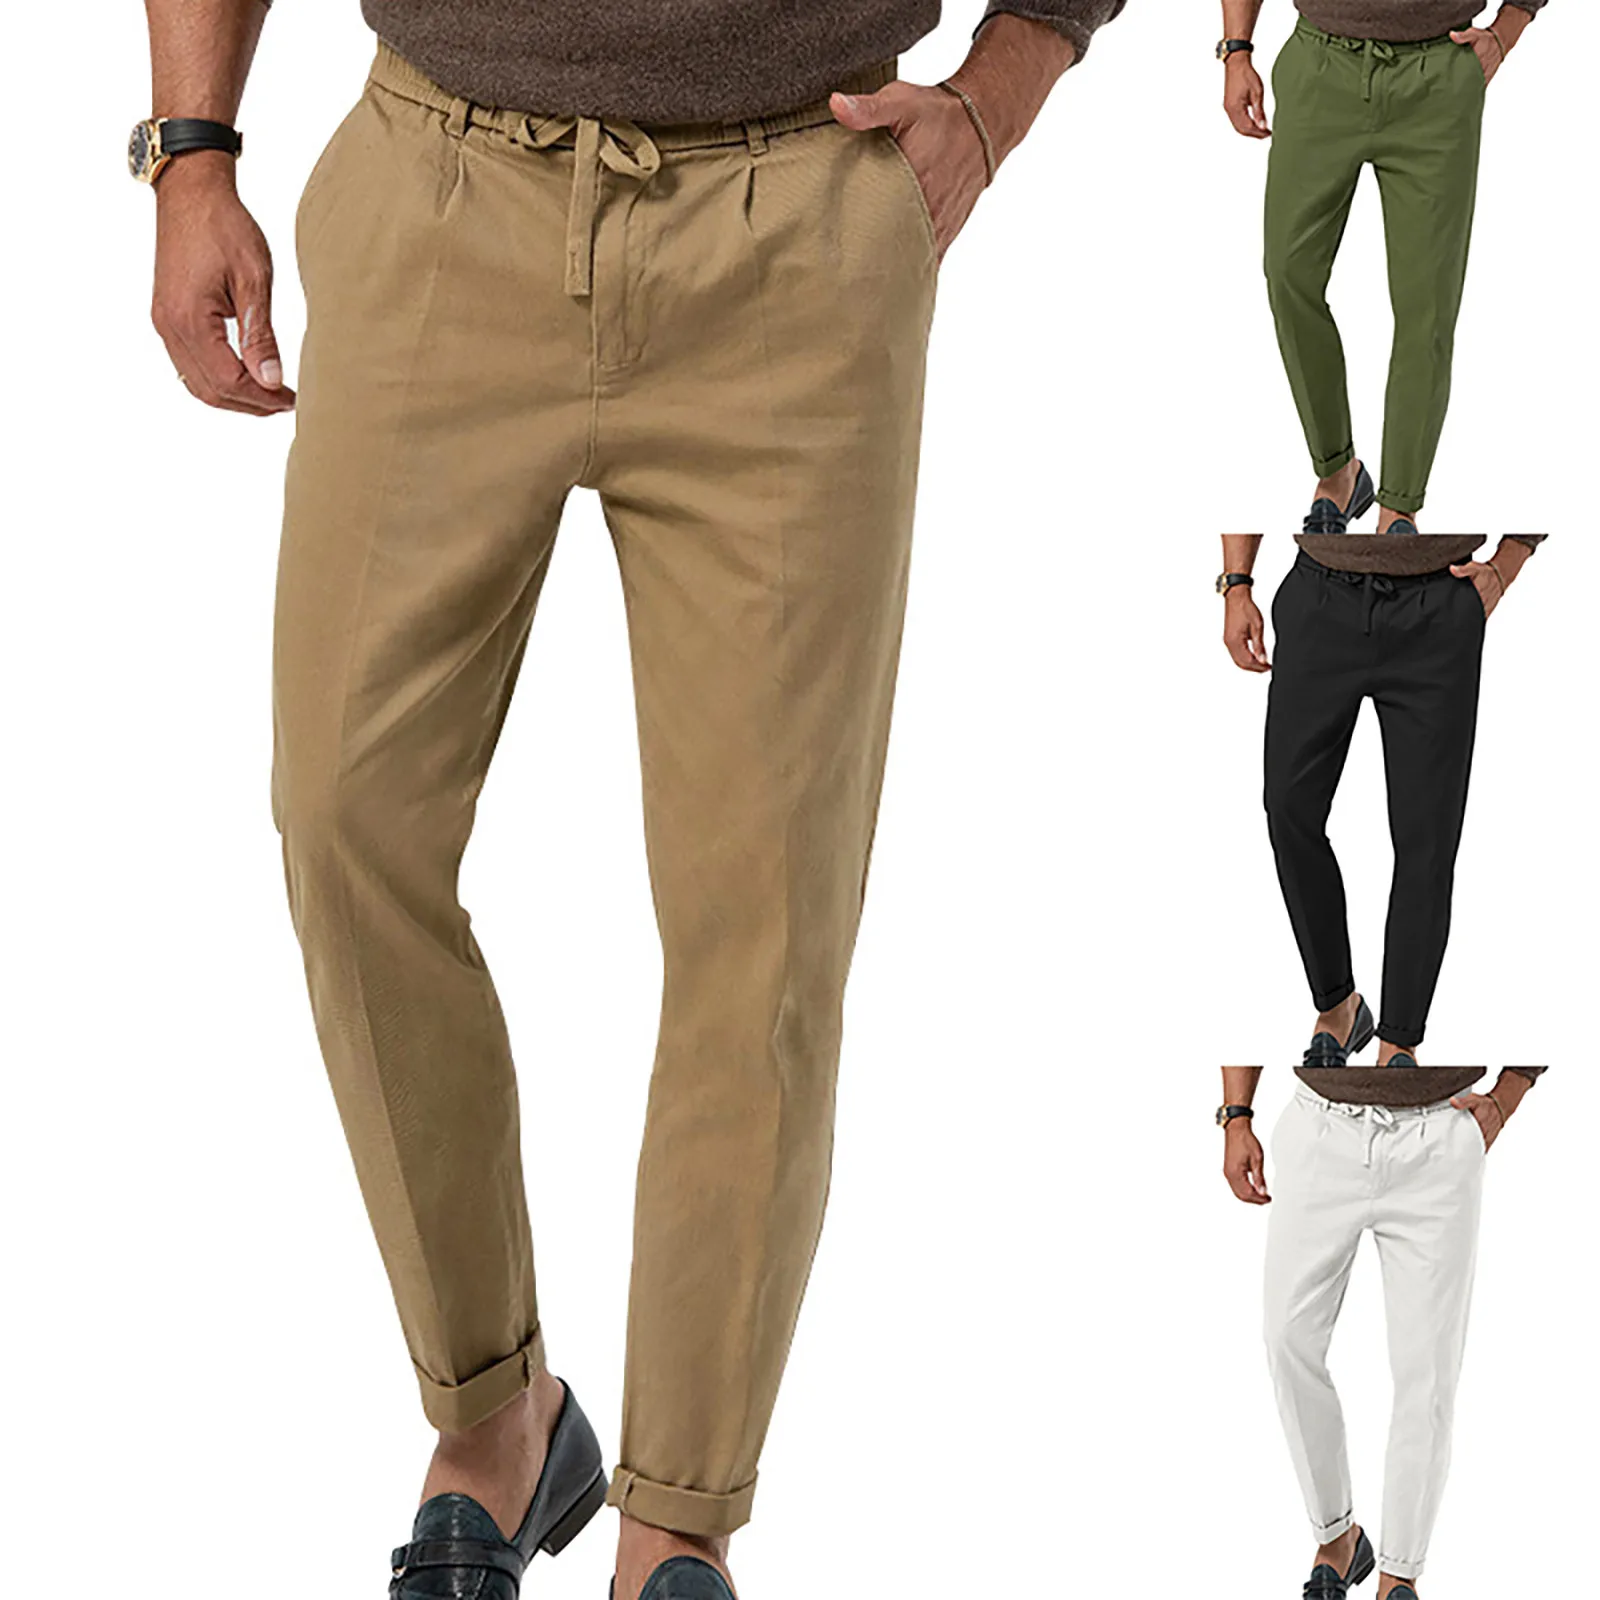 Men's Cotton Linen Pants Solid Casual Loose Men Clothing Elastic Waist Breathable Fitness Pants Pantalon Homme Pencil Pants 1